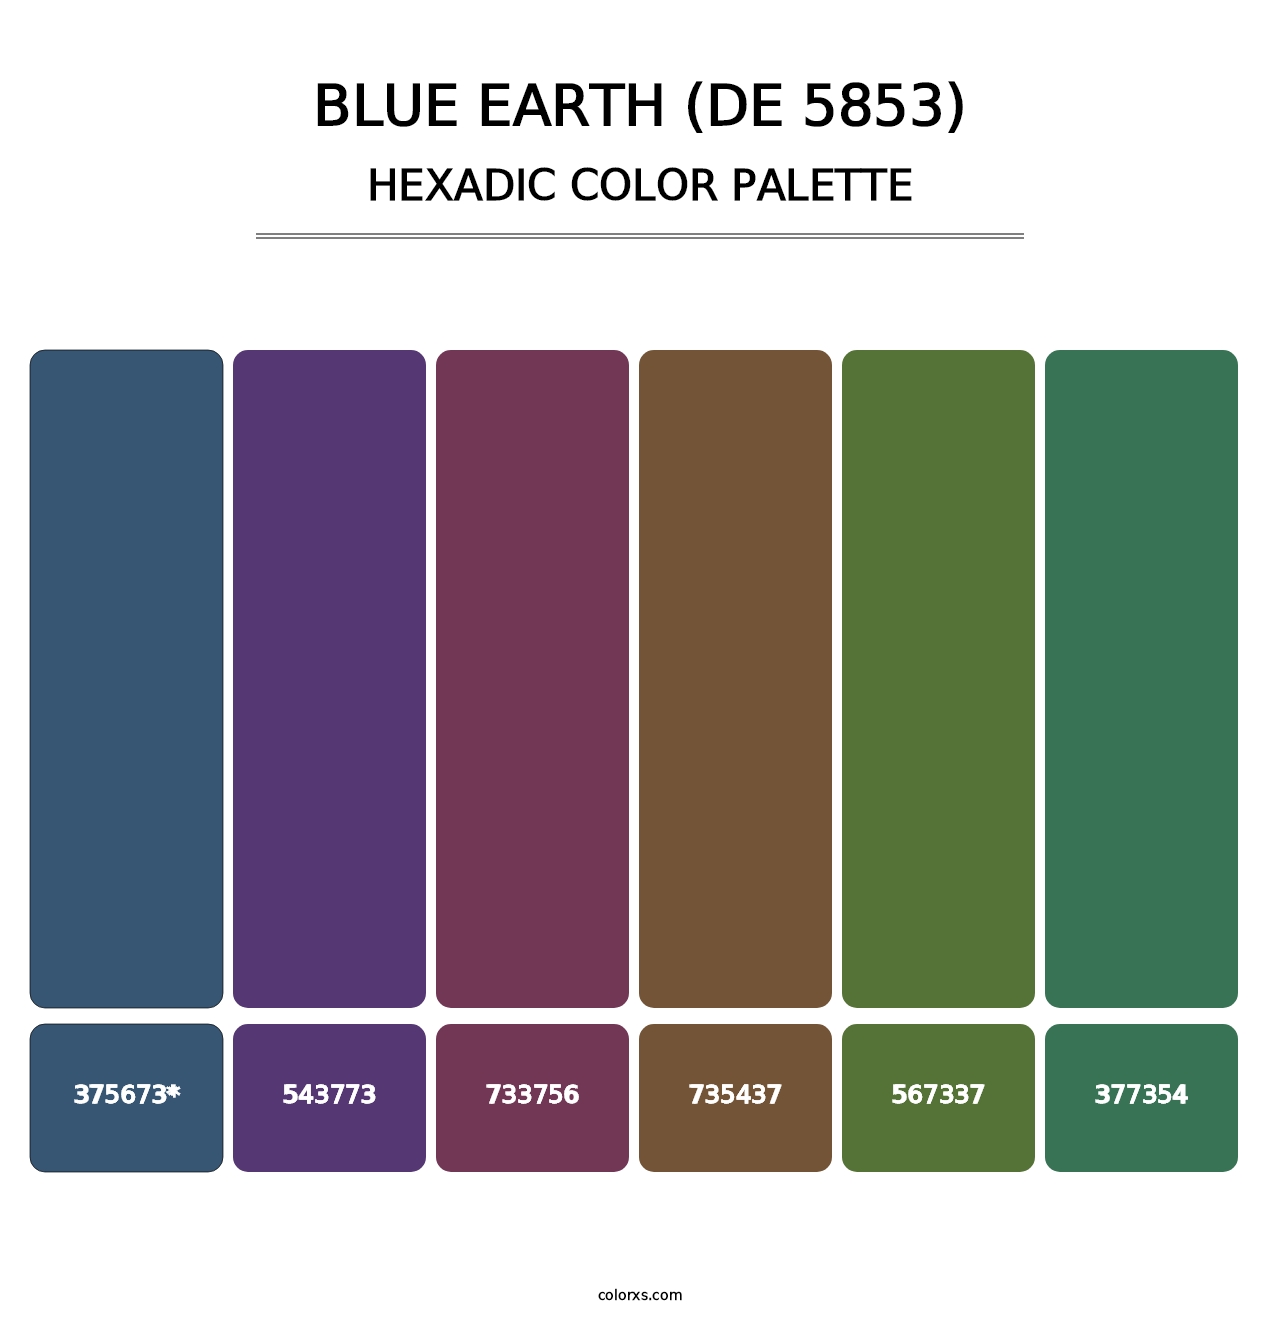 Blue Earth (DE 5853) - Hexadic Color Palette